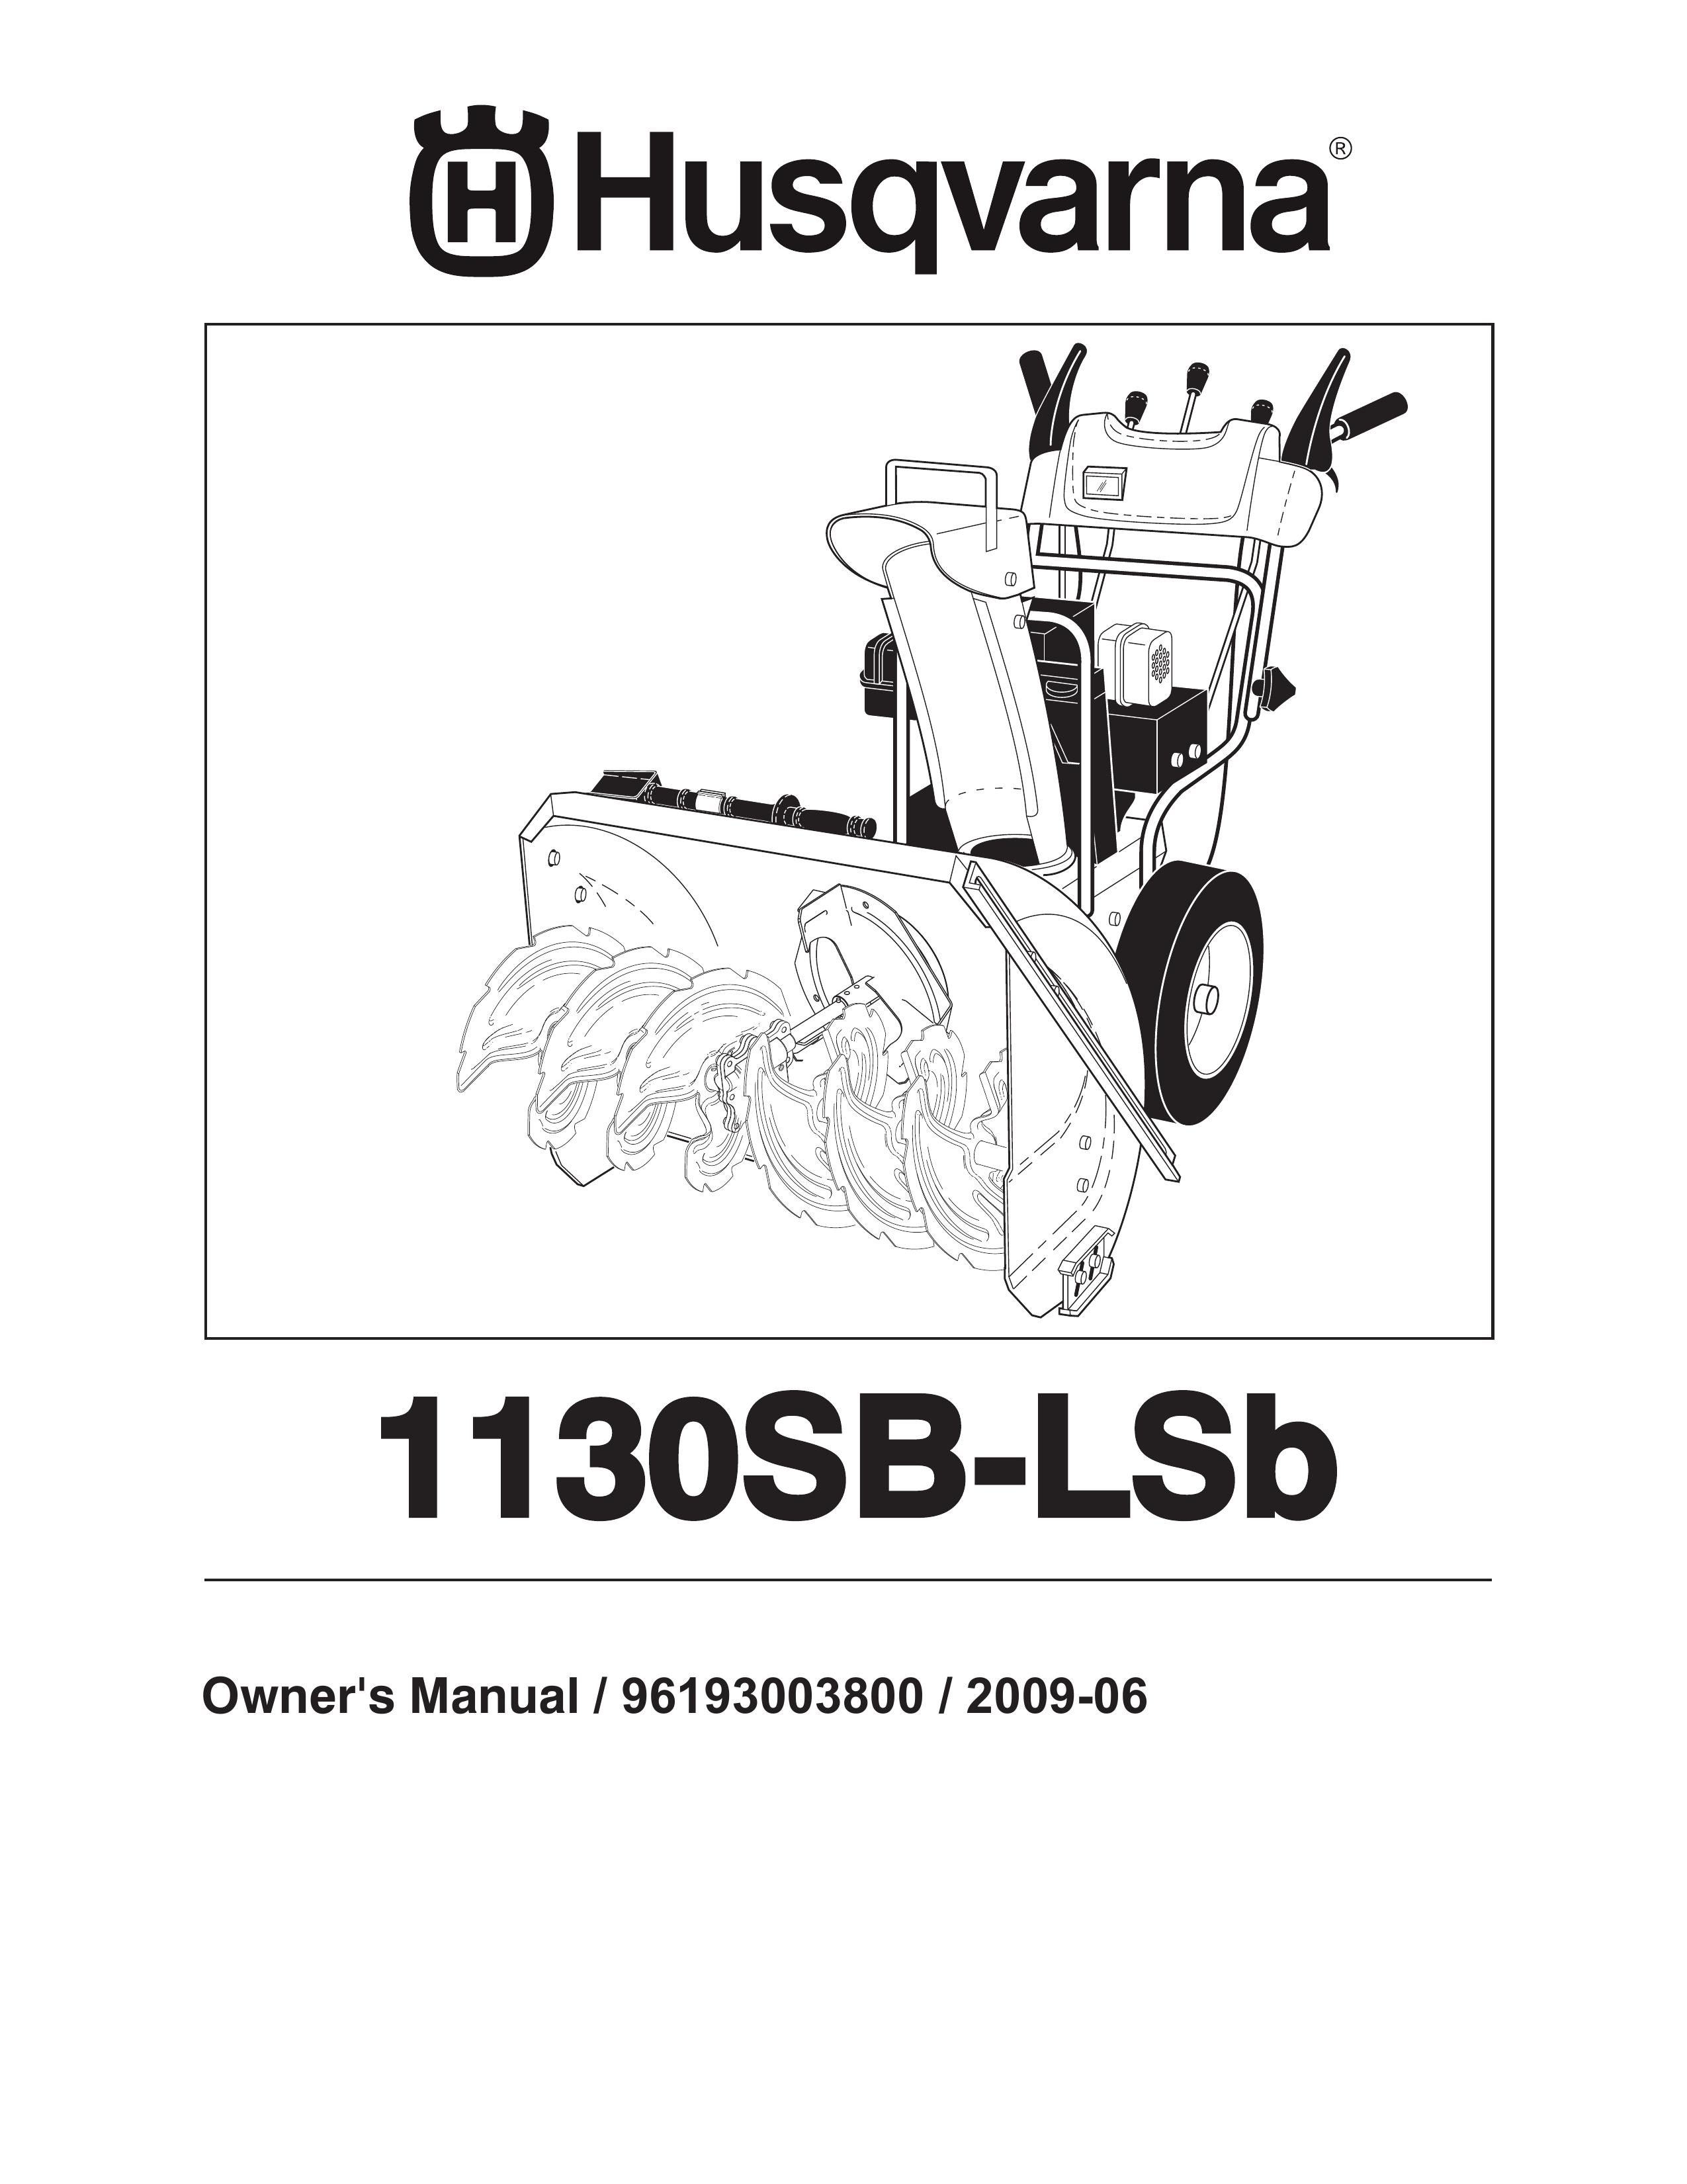 Husqvarna 1130SB-LSB Snow Blower User Manual